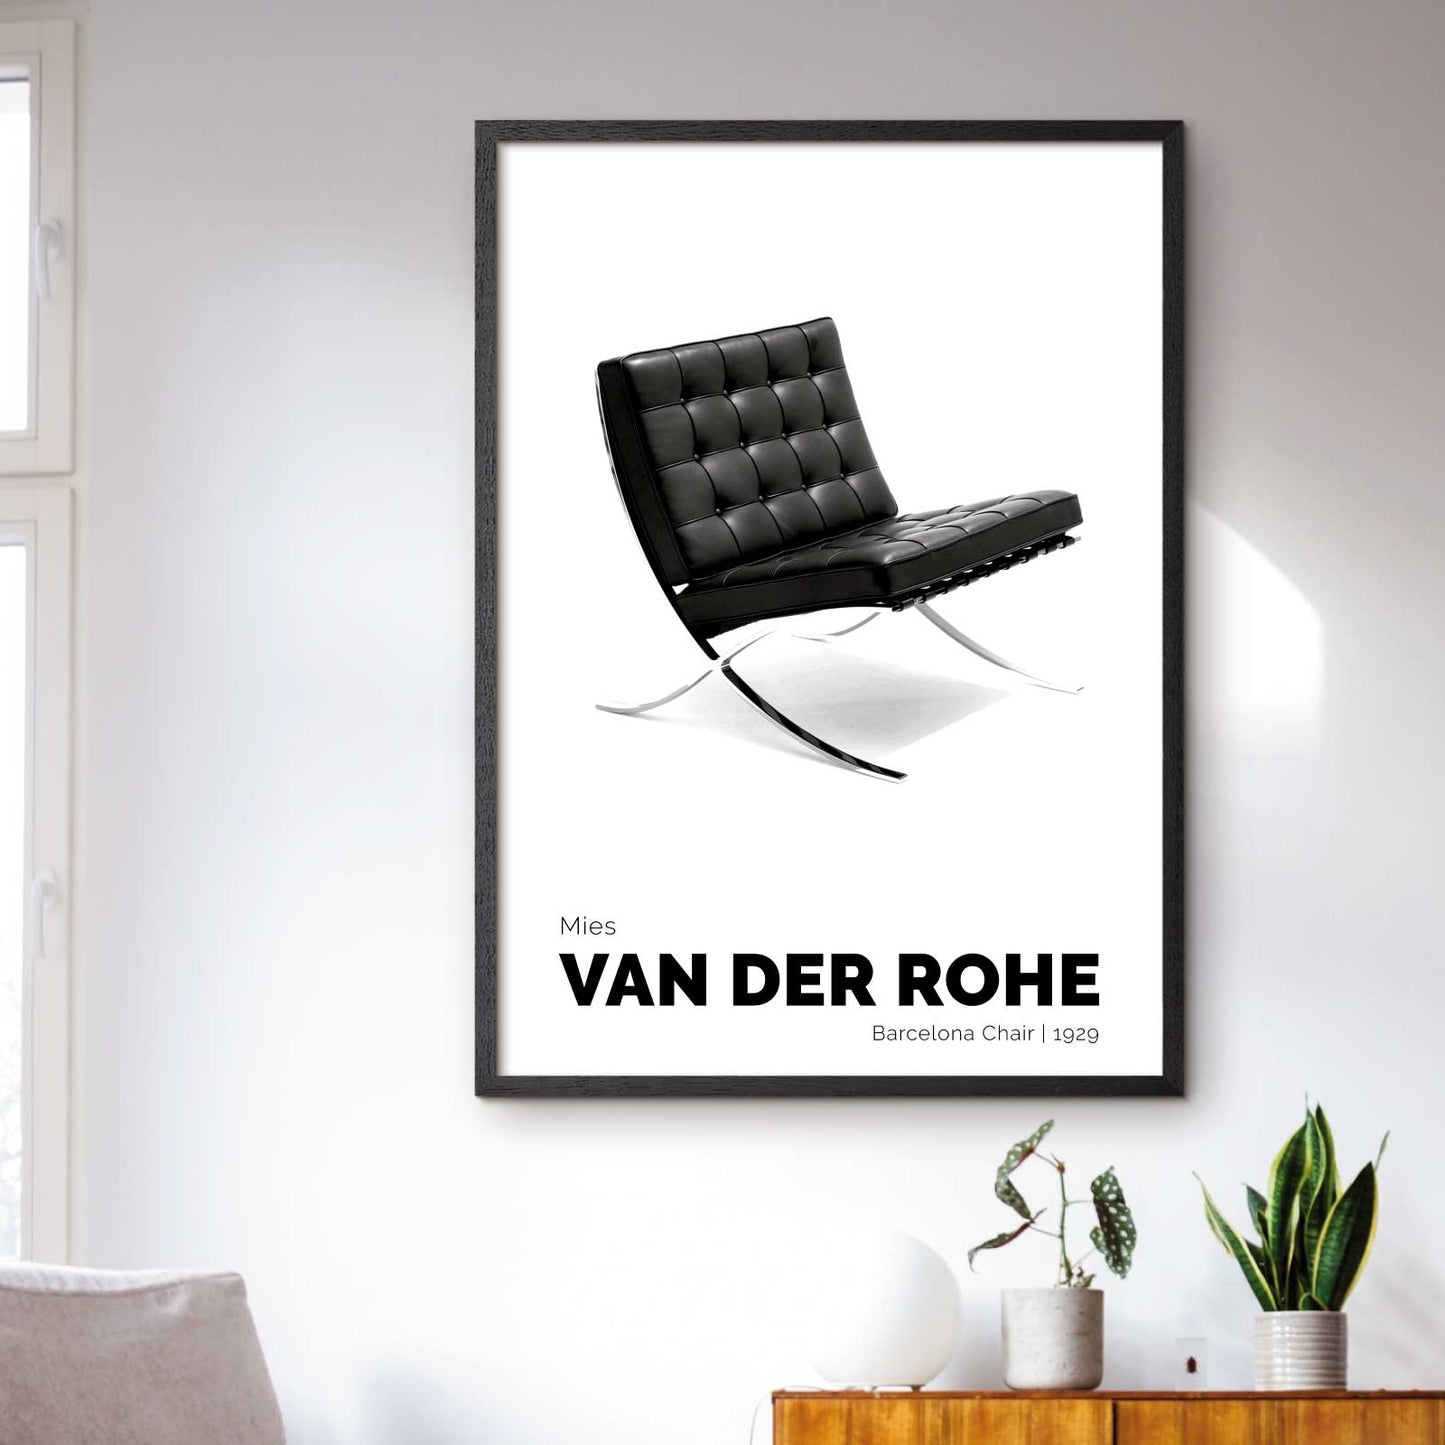 Designplakat med "Barcelona Chair" af Mies van der Rohe